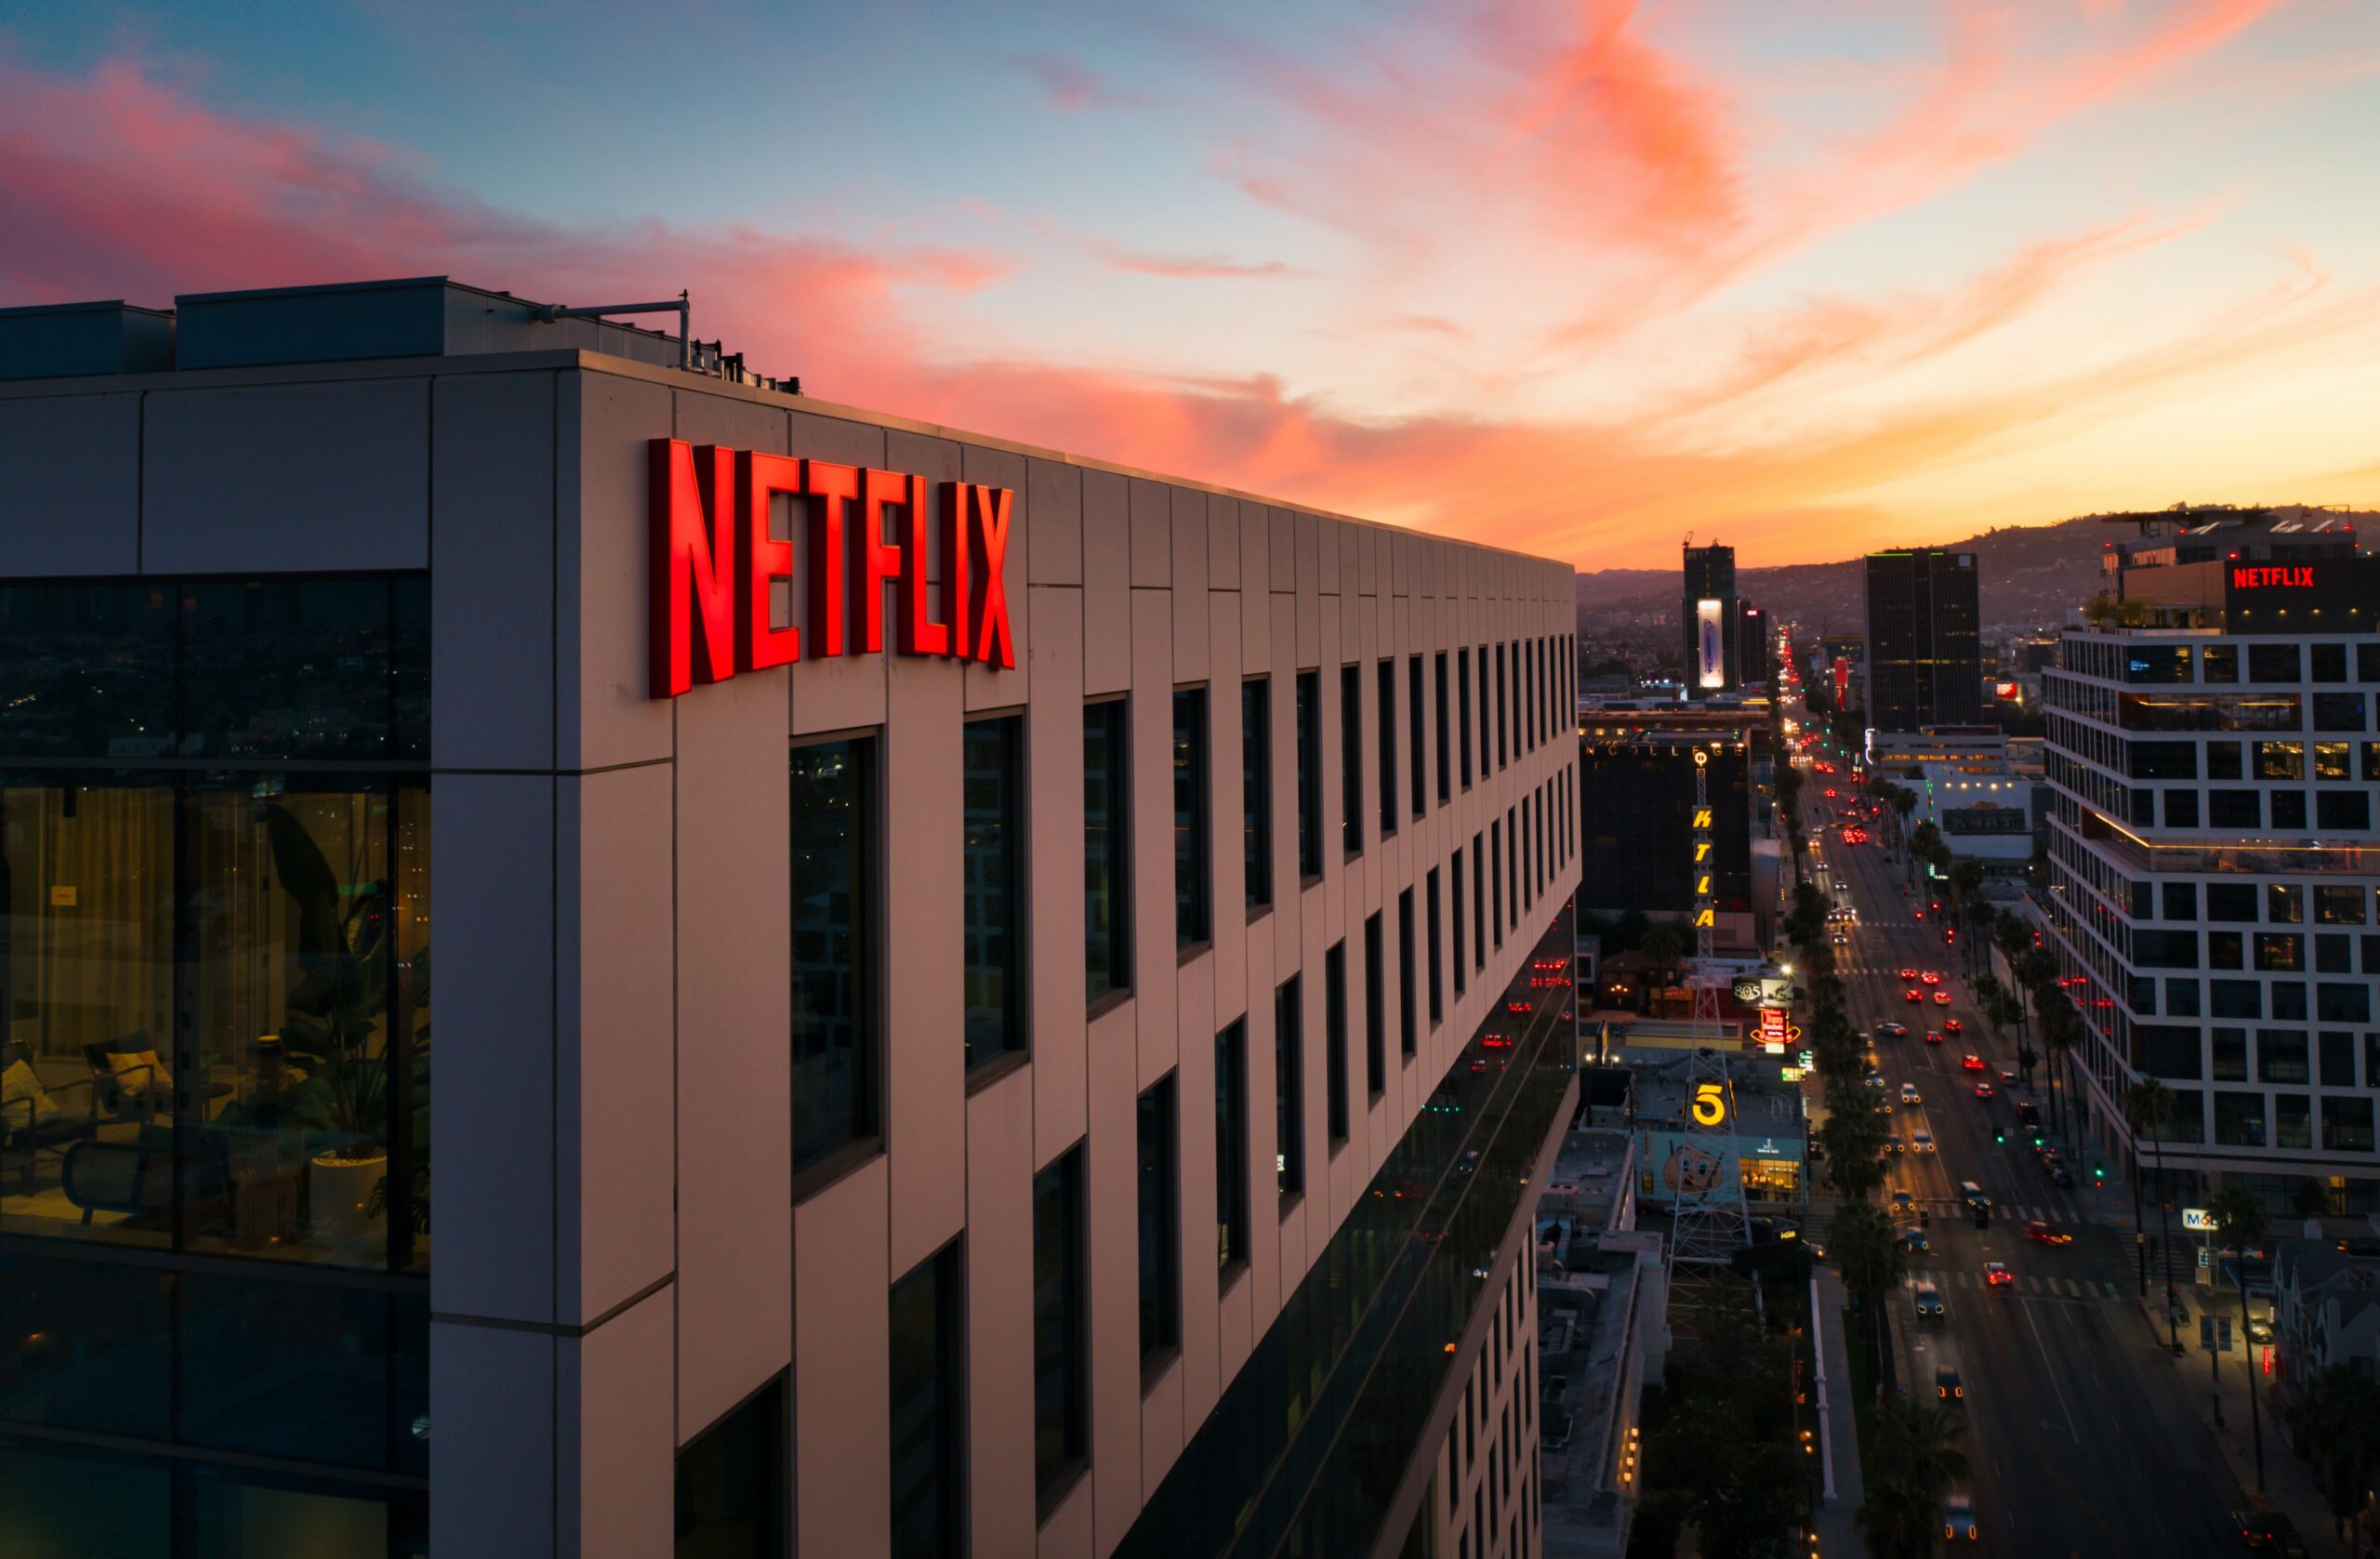 Netflix sperren mit VPN umgehen: Ist das legal?